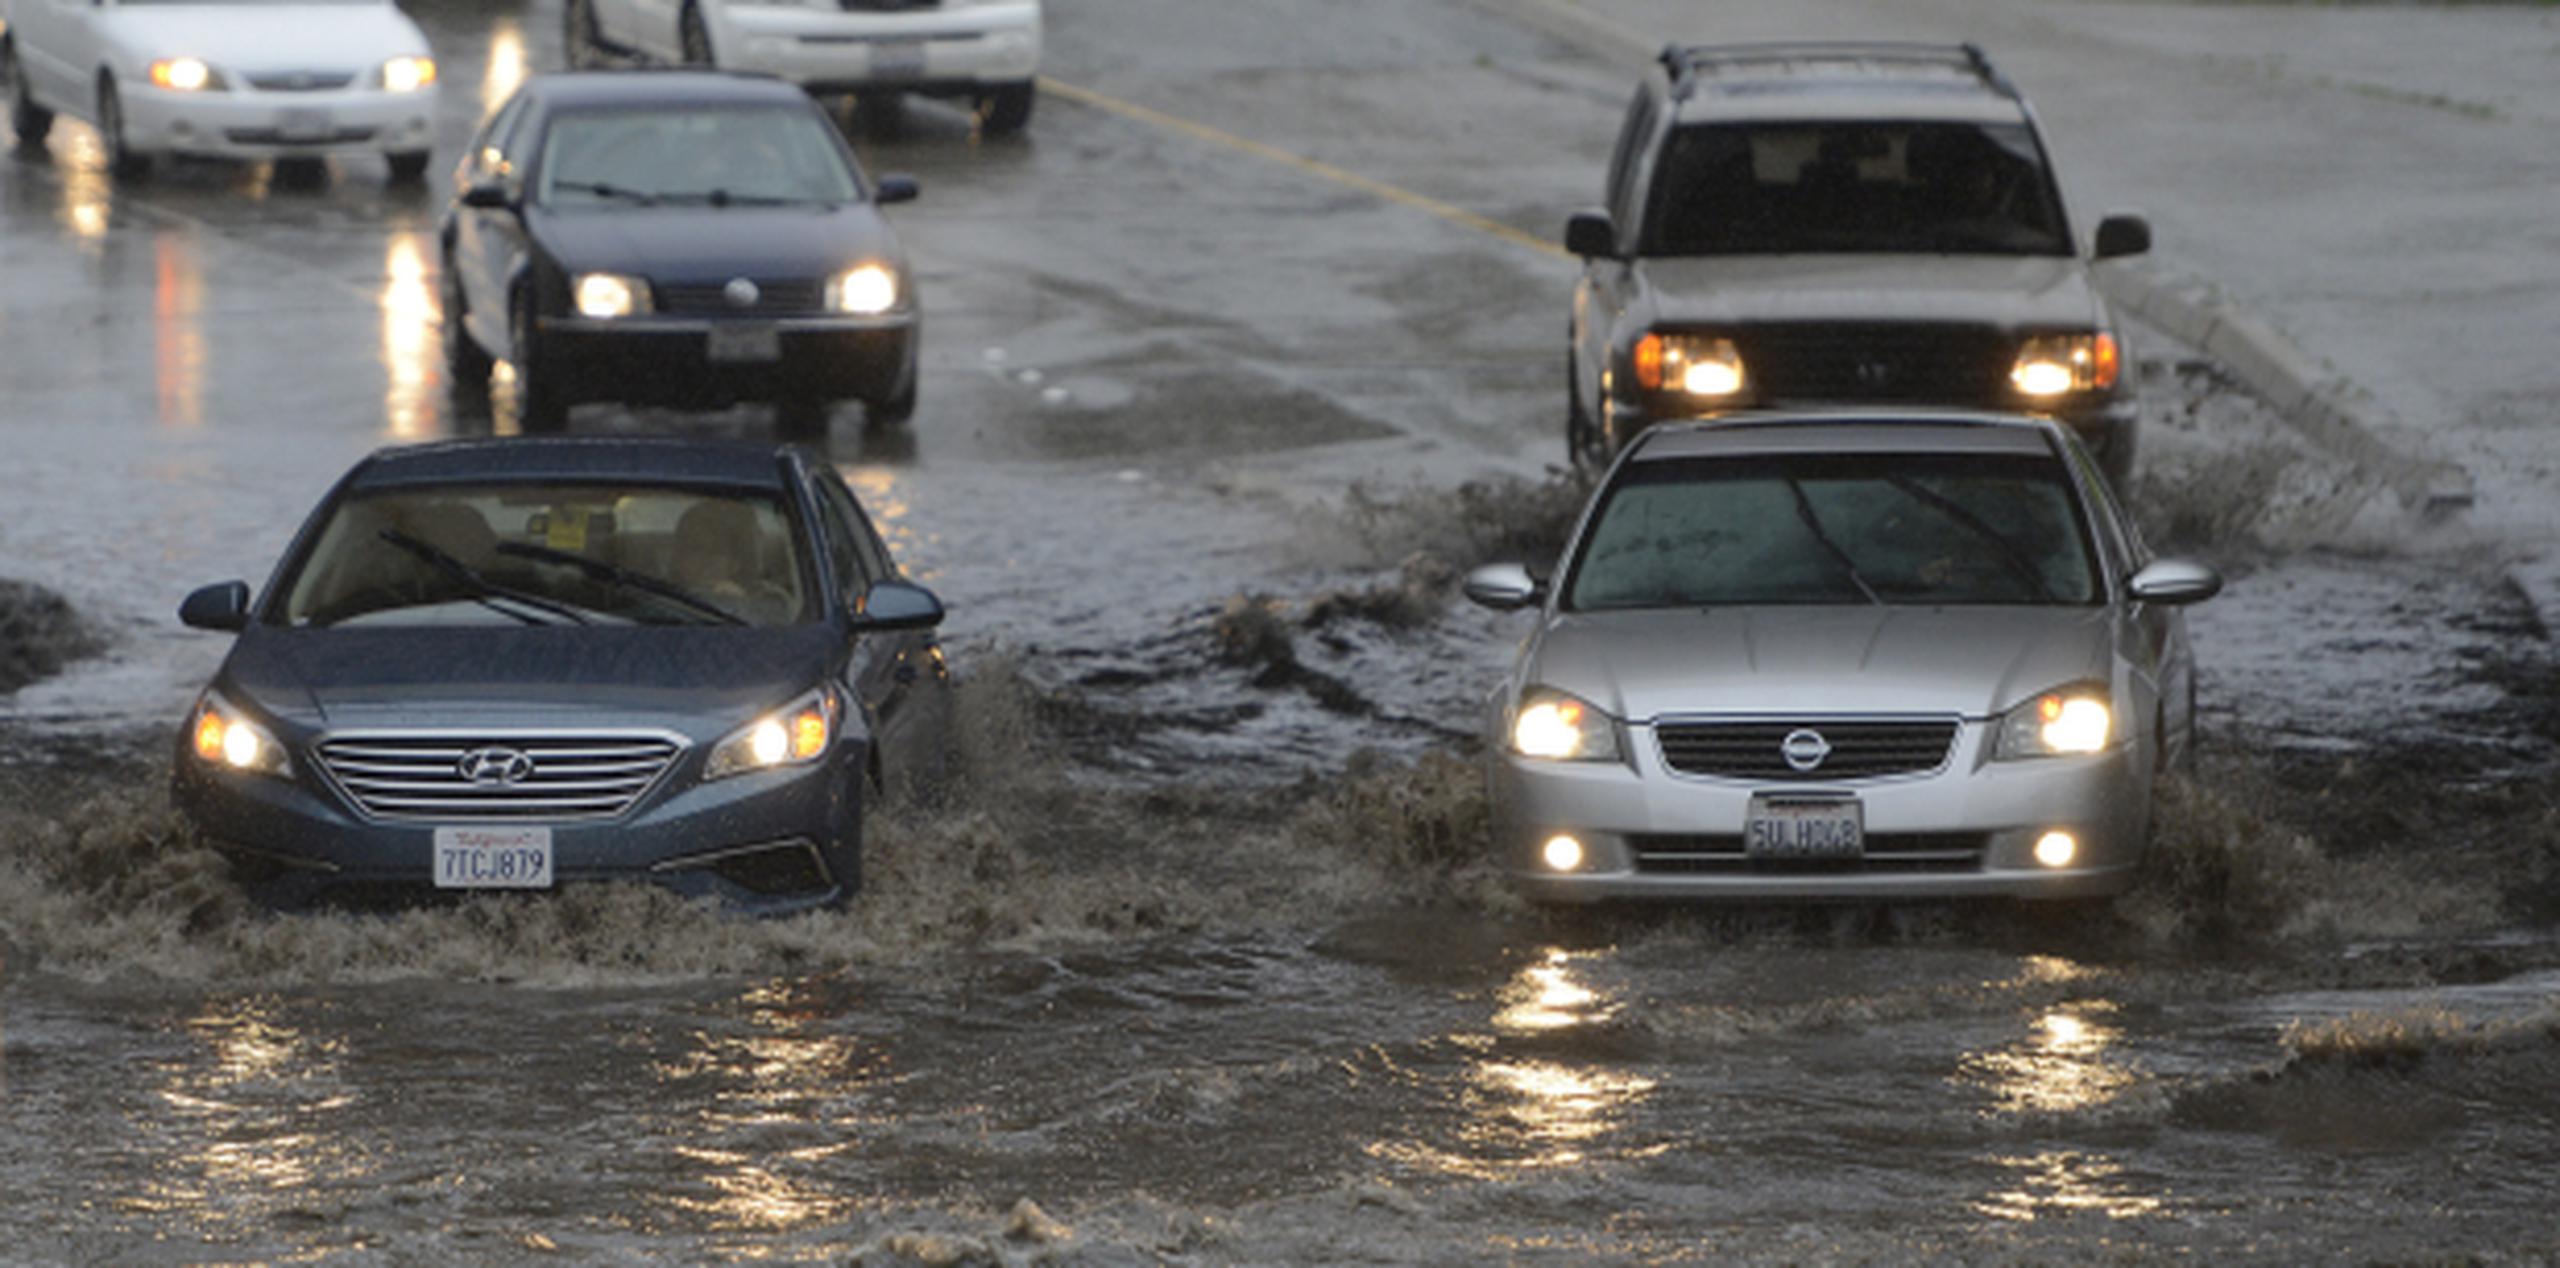 Muchas carreteras del centro y sur de California quedaron inundadas con las fuertes lluvias que dejó la tormenta. (David Royal/Monterey Herald via AP)
